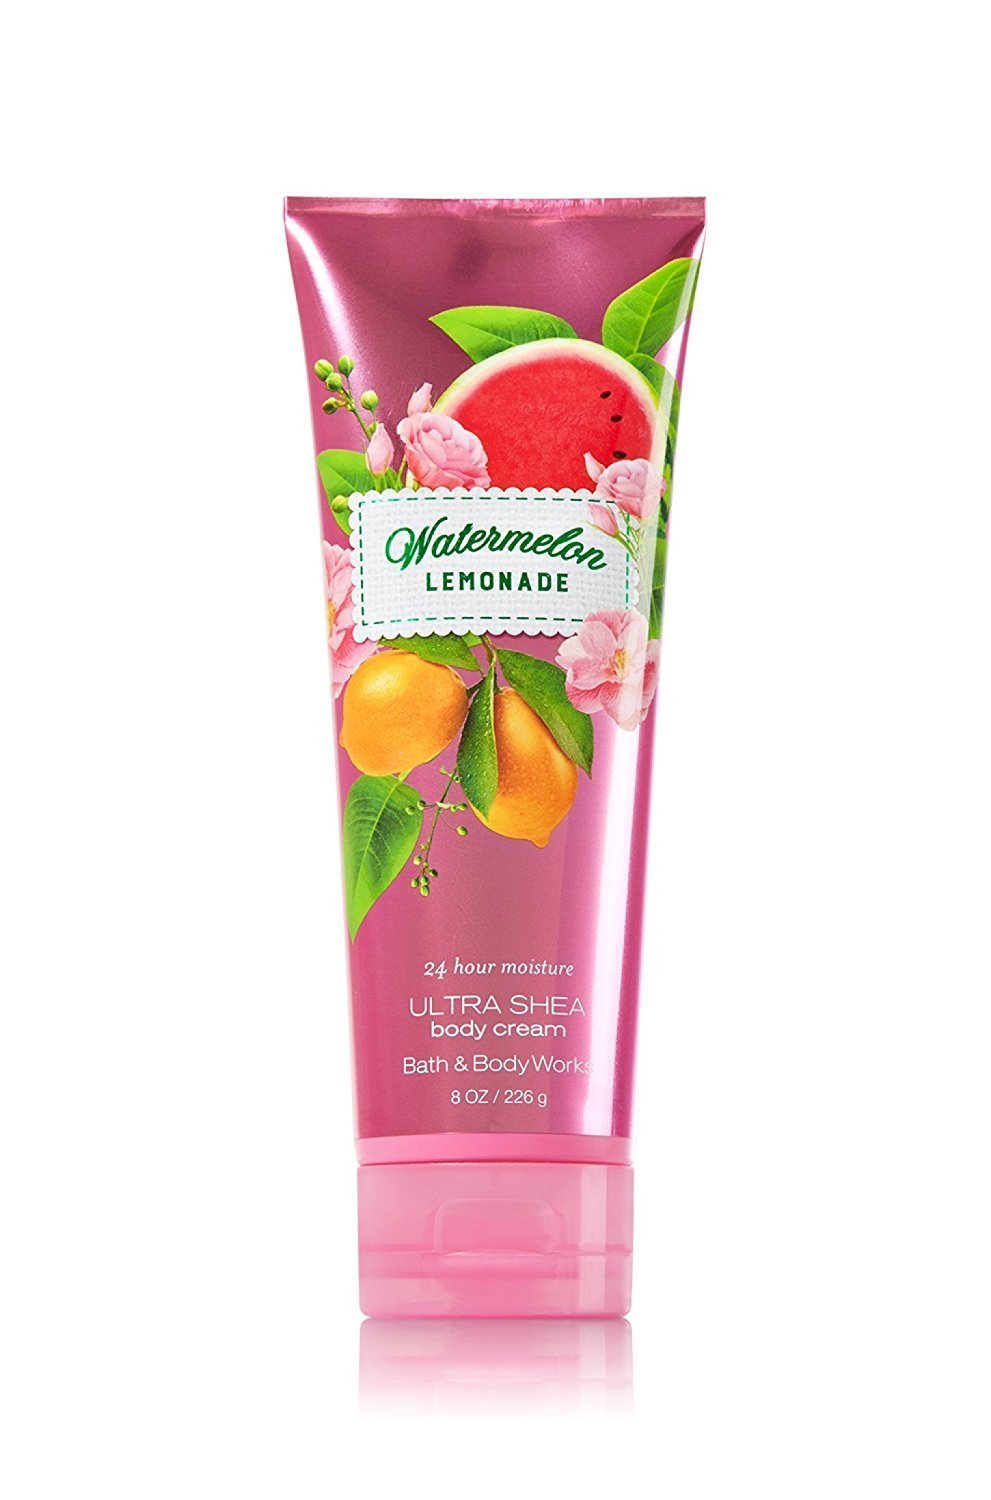 Kem dưỡng ẩm cơ thể Bath & Body Works Watermelon Lemonade 24 hour moisture